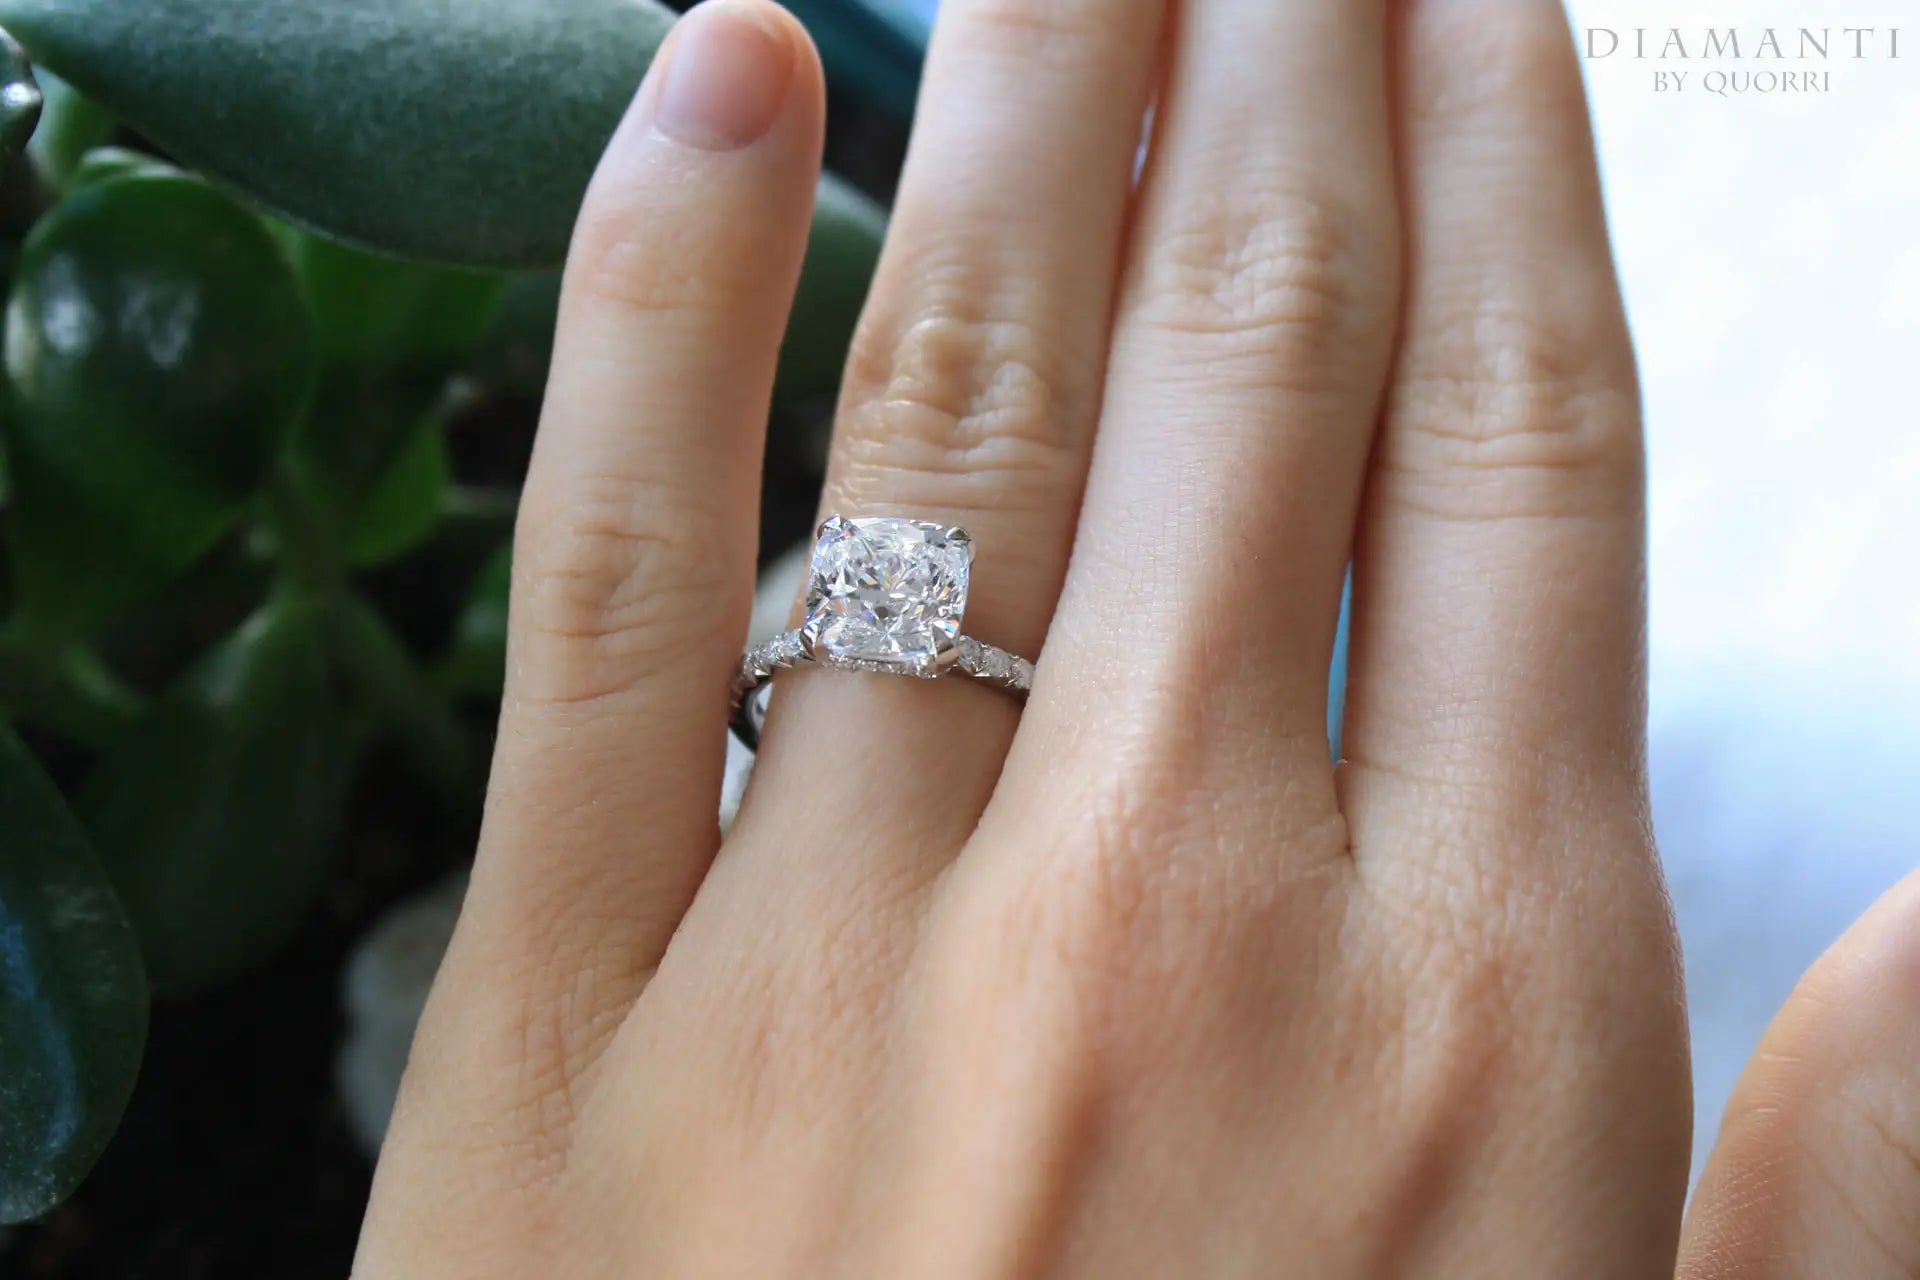 3 carat white gold and platinum affordable designer accented cushion lab diamond engagement ring Quorri